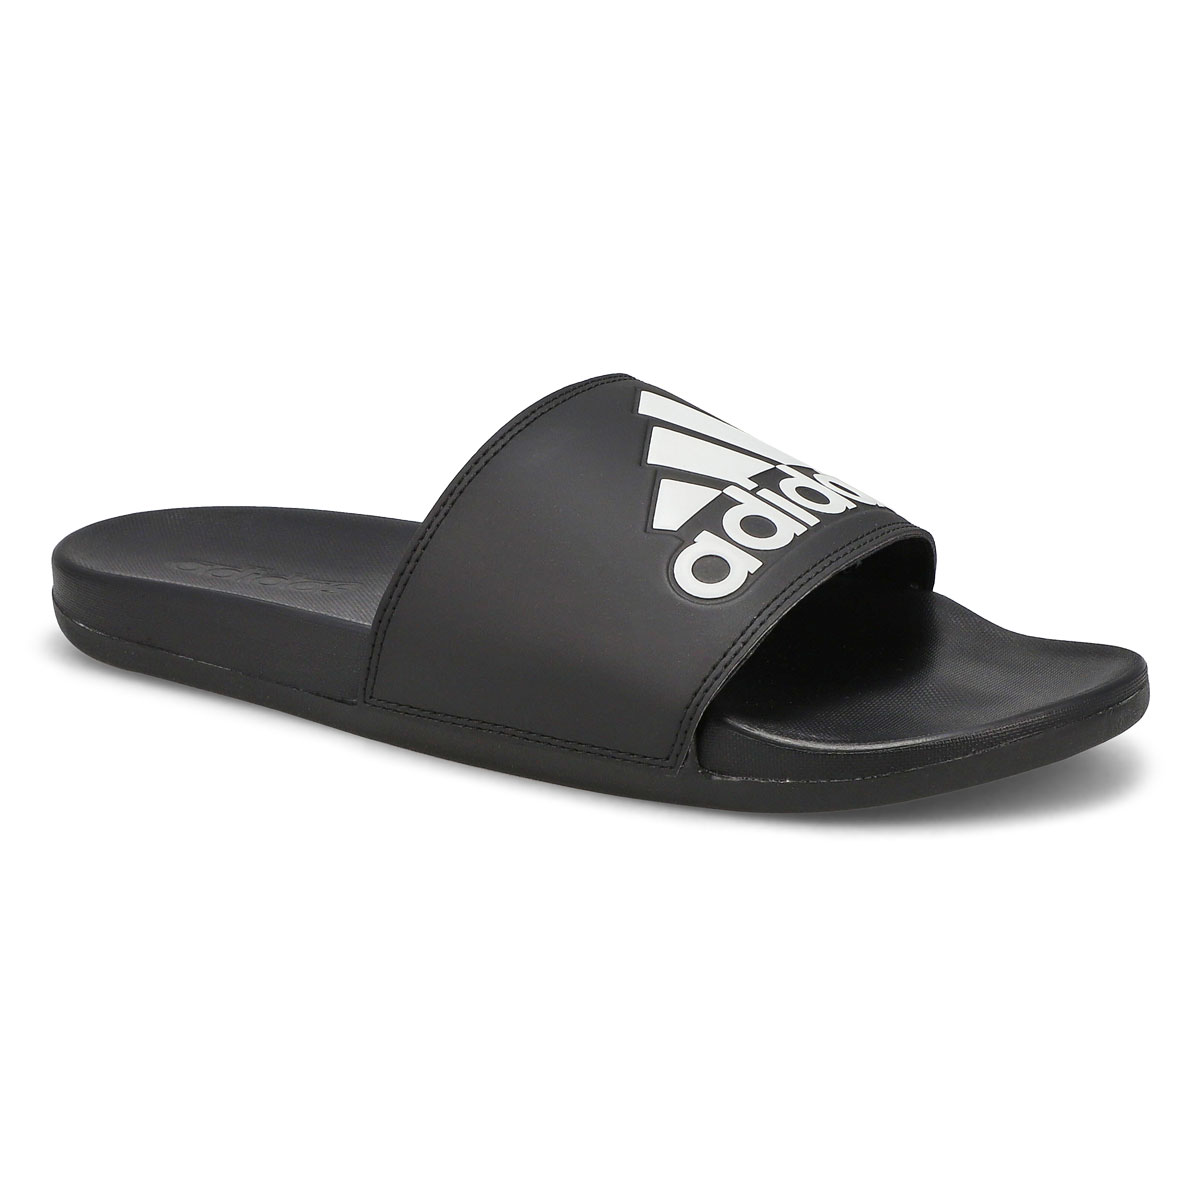 Men's Adilette Comfort Slide Sandal - Black/White